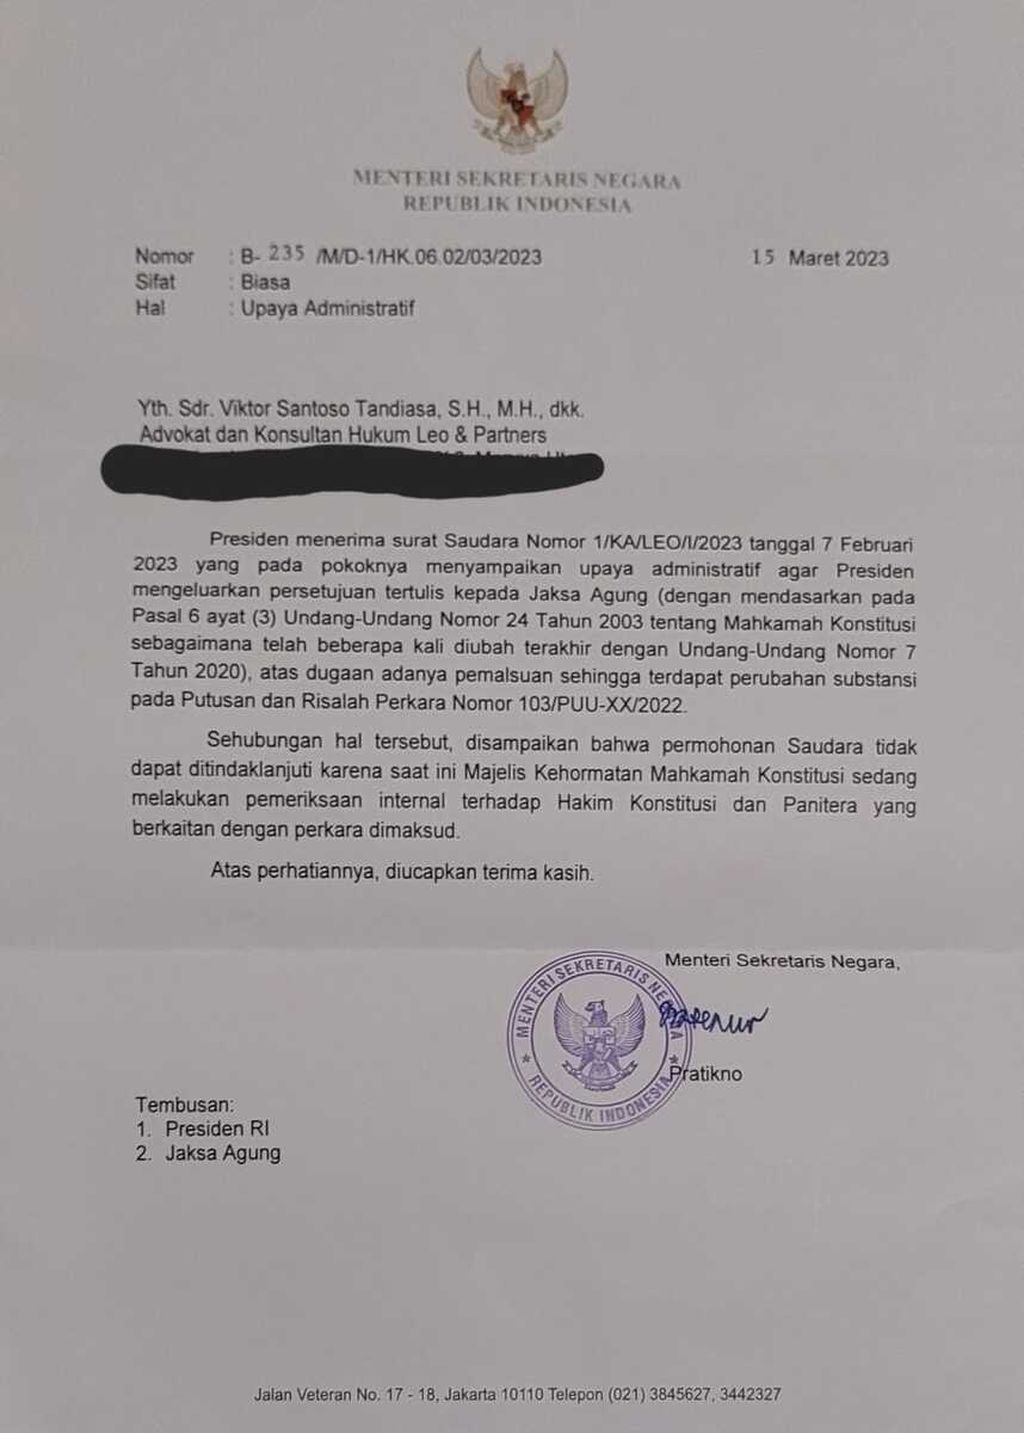 Jawaban Menteri Sekretaris Negara Pratikno atas permintaan agar Presiden mengeluarkan persetujuan dilakukannya tindakan kepolisian terhadap hakim konstitusi dalam kasus dugaan pemalsuan surat terkait dengan perubahan substansi putusan 103/PUU-XX/2022.